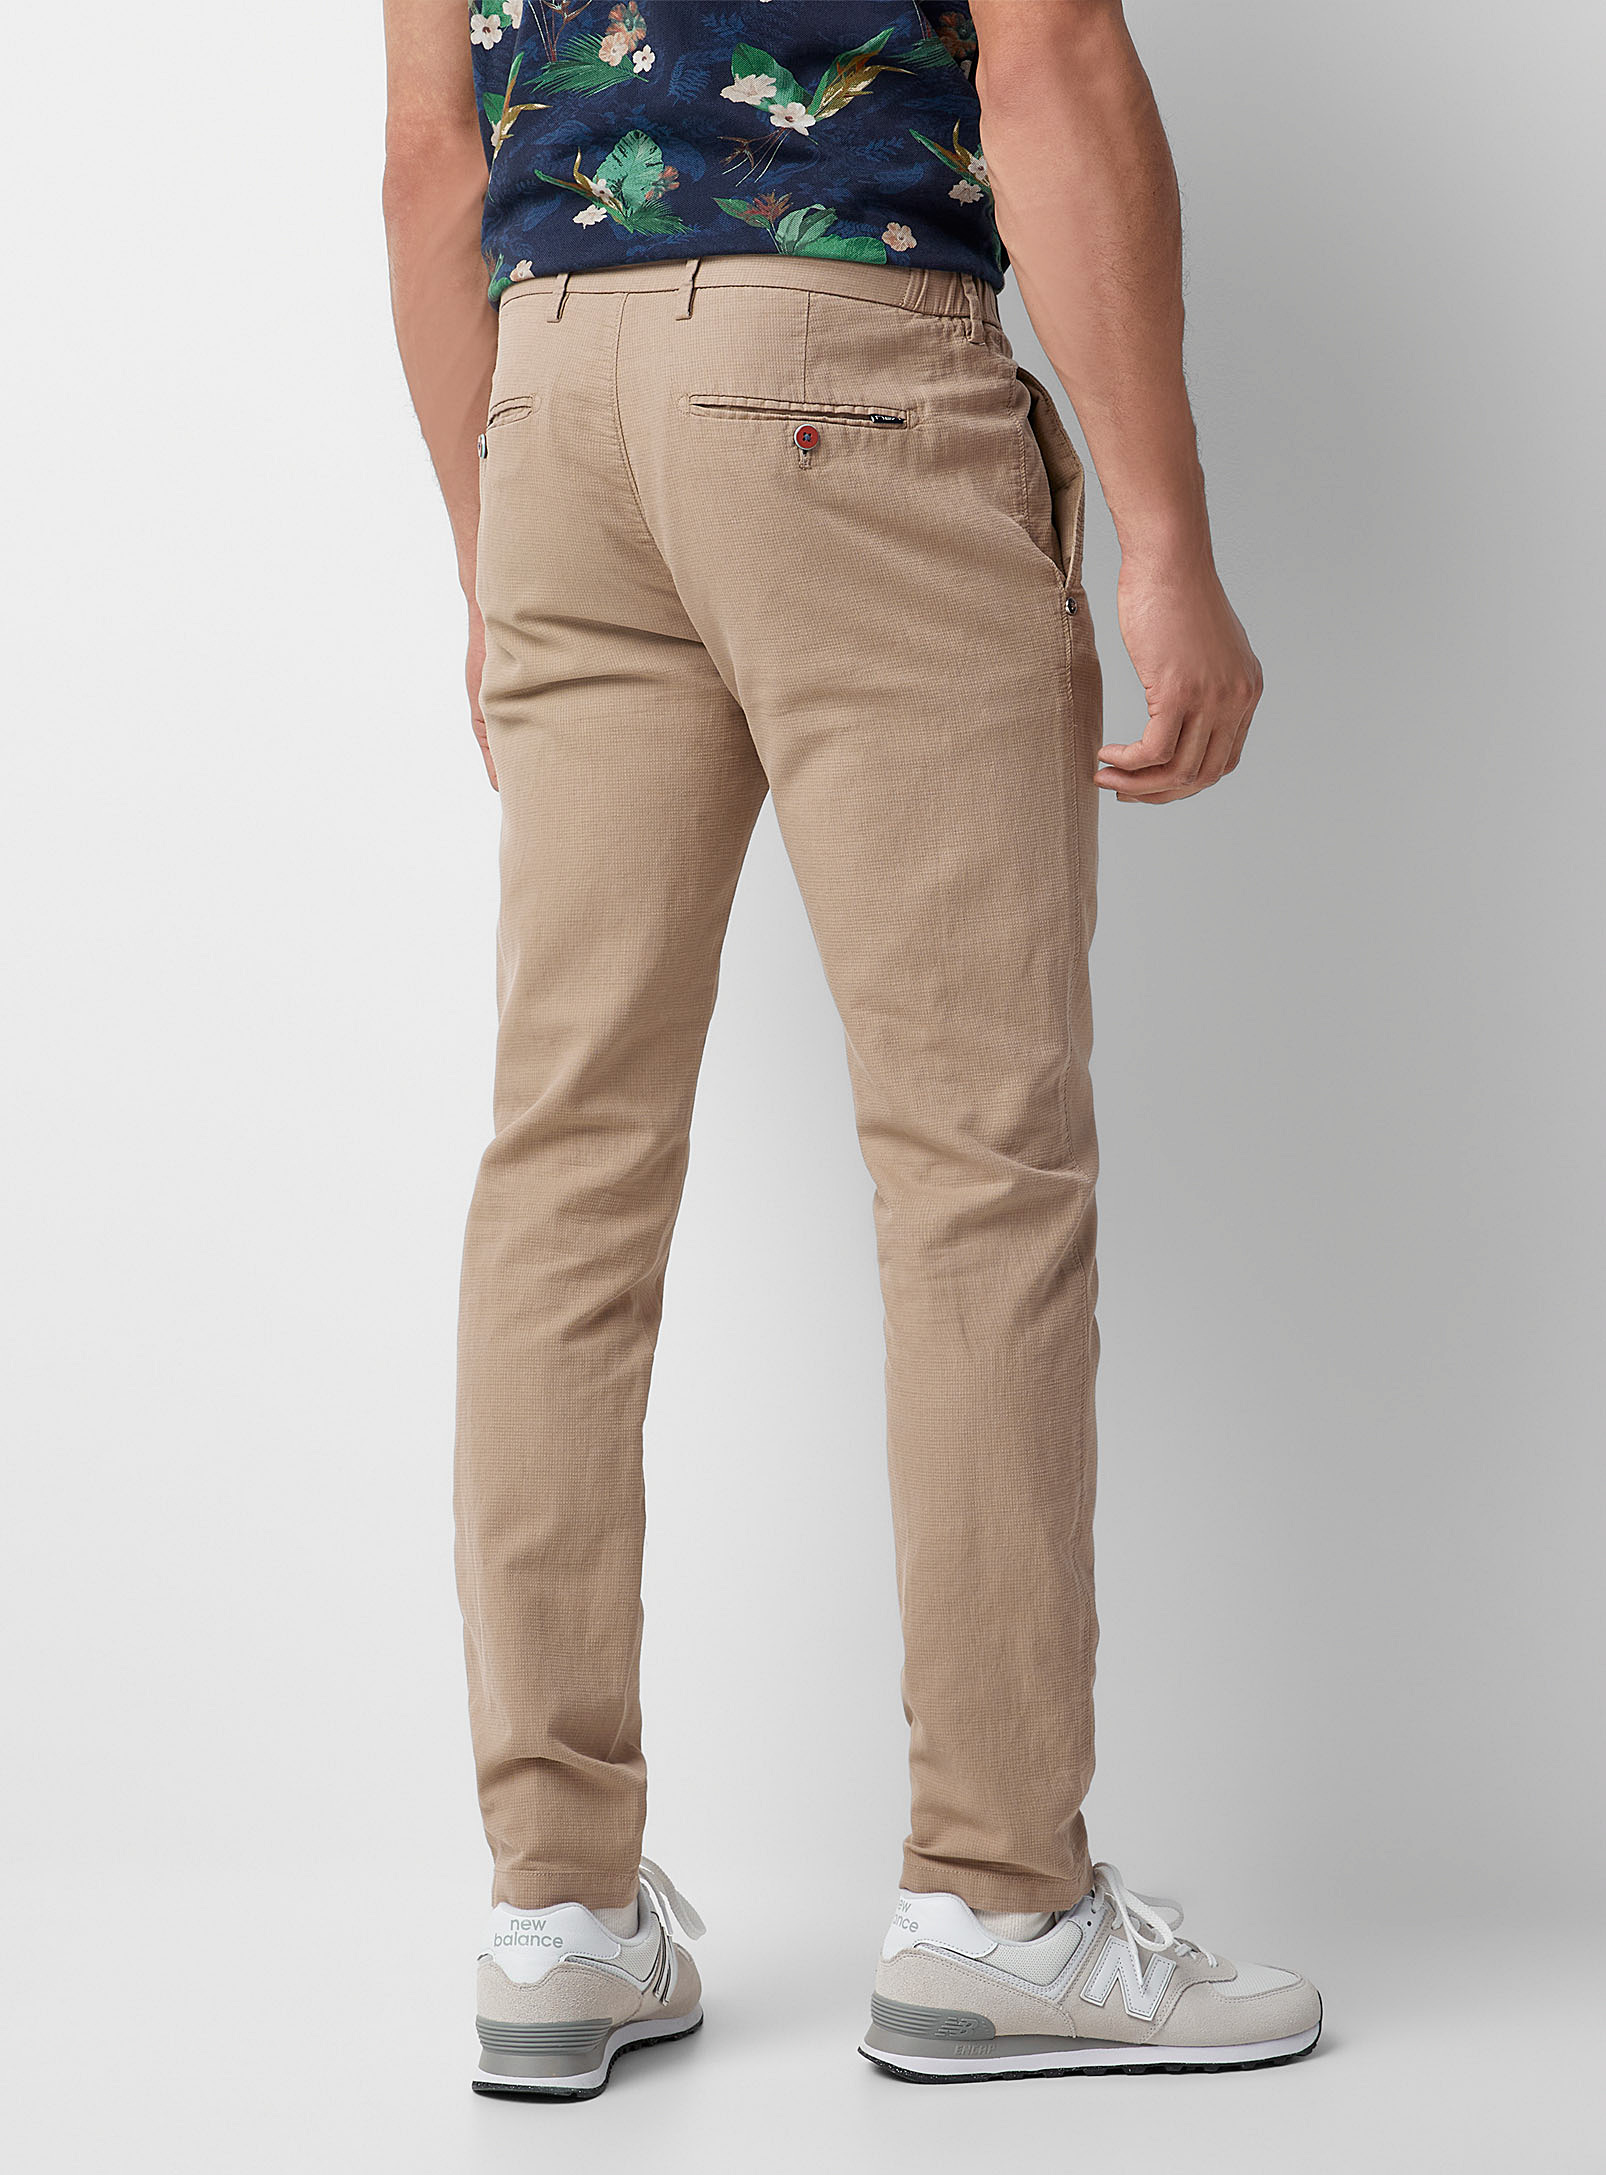 New Zealand Auckland - Le pantalon texturé taille confort